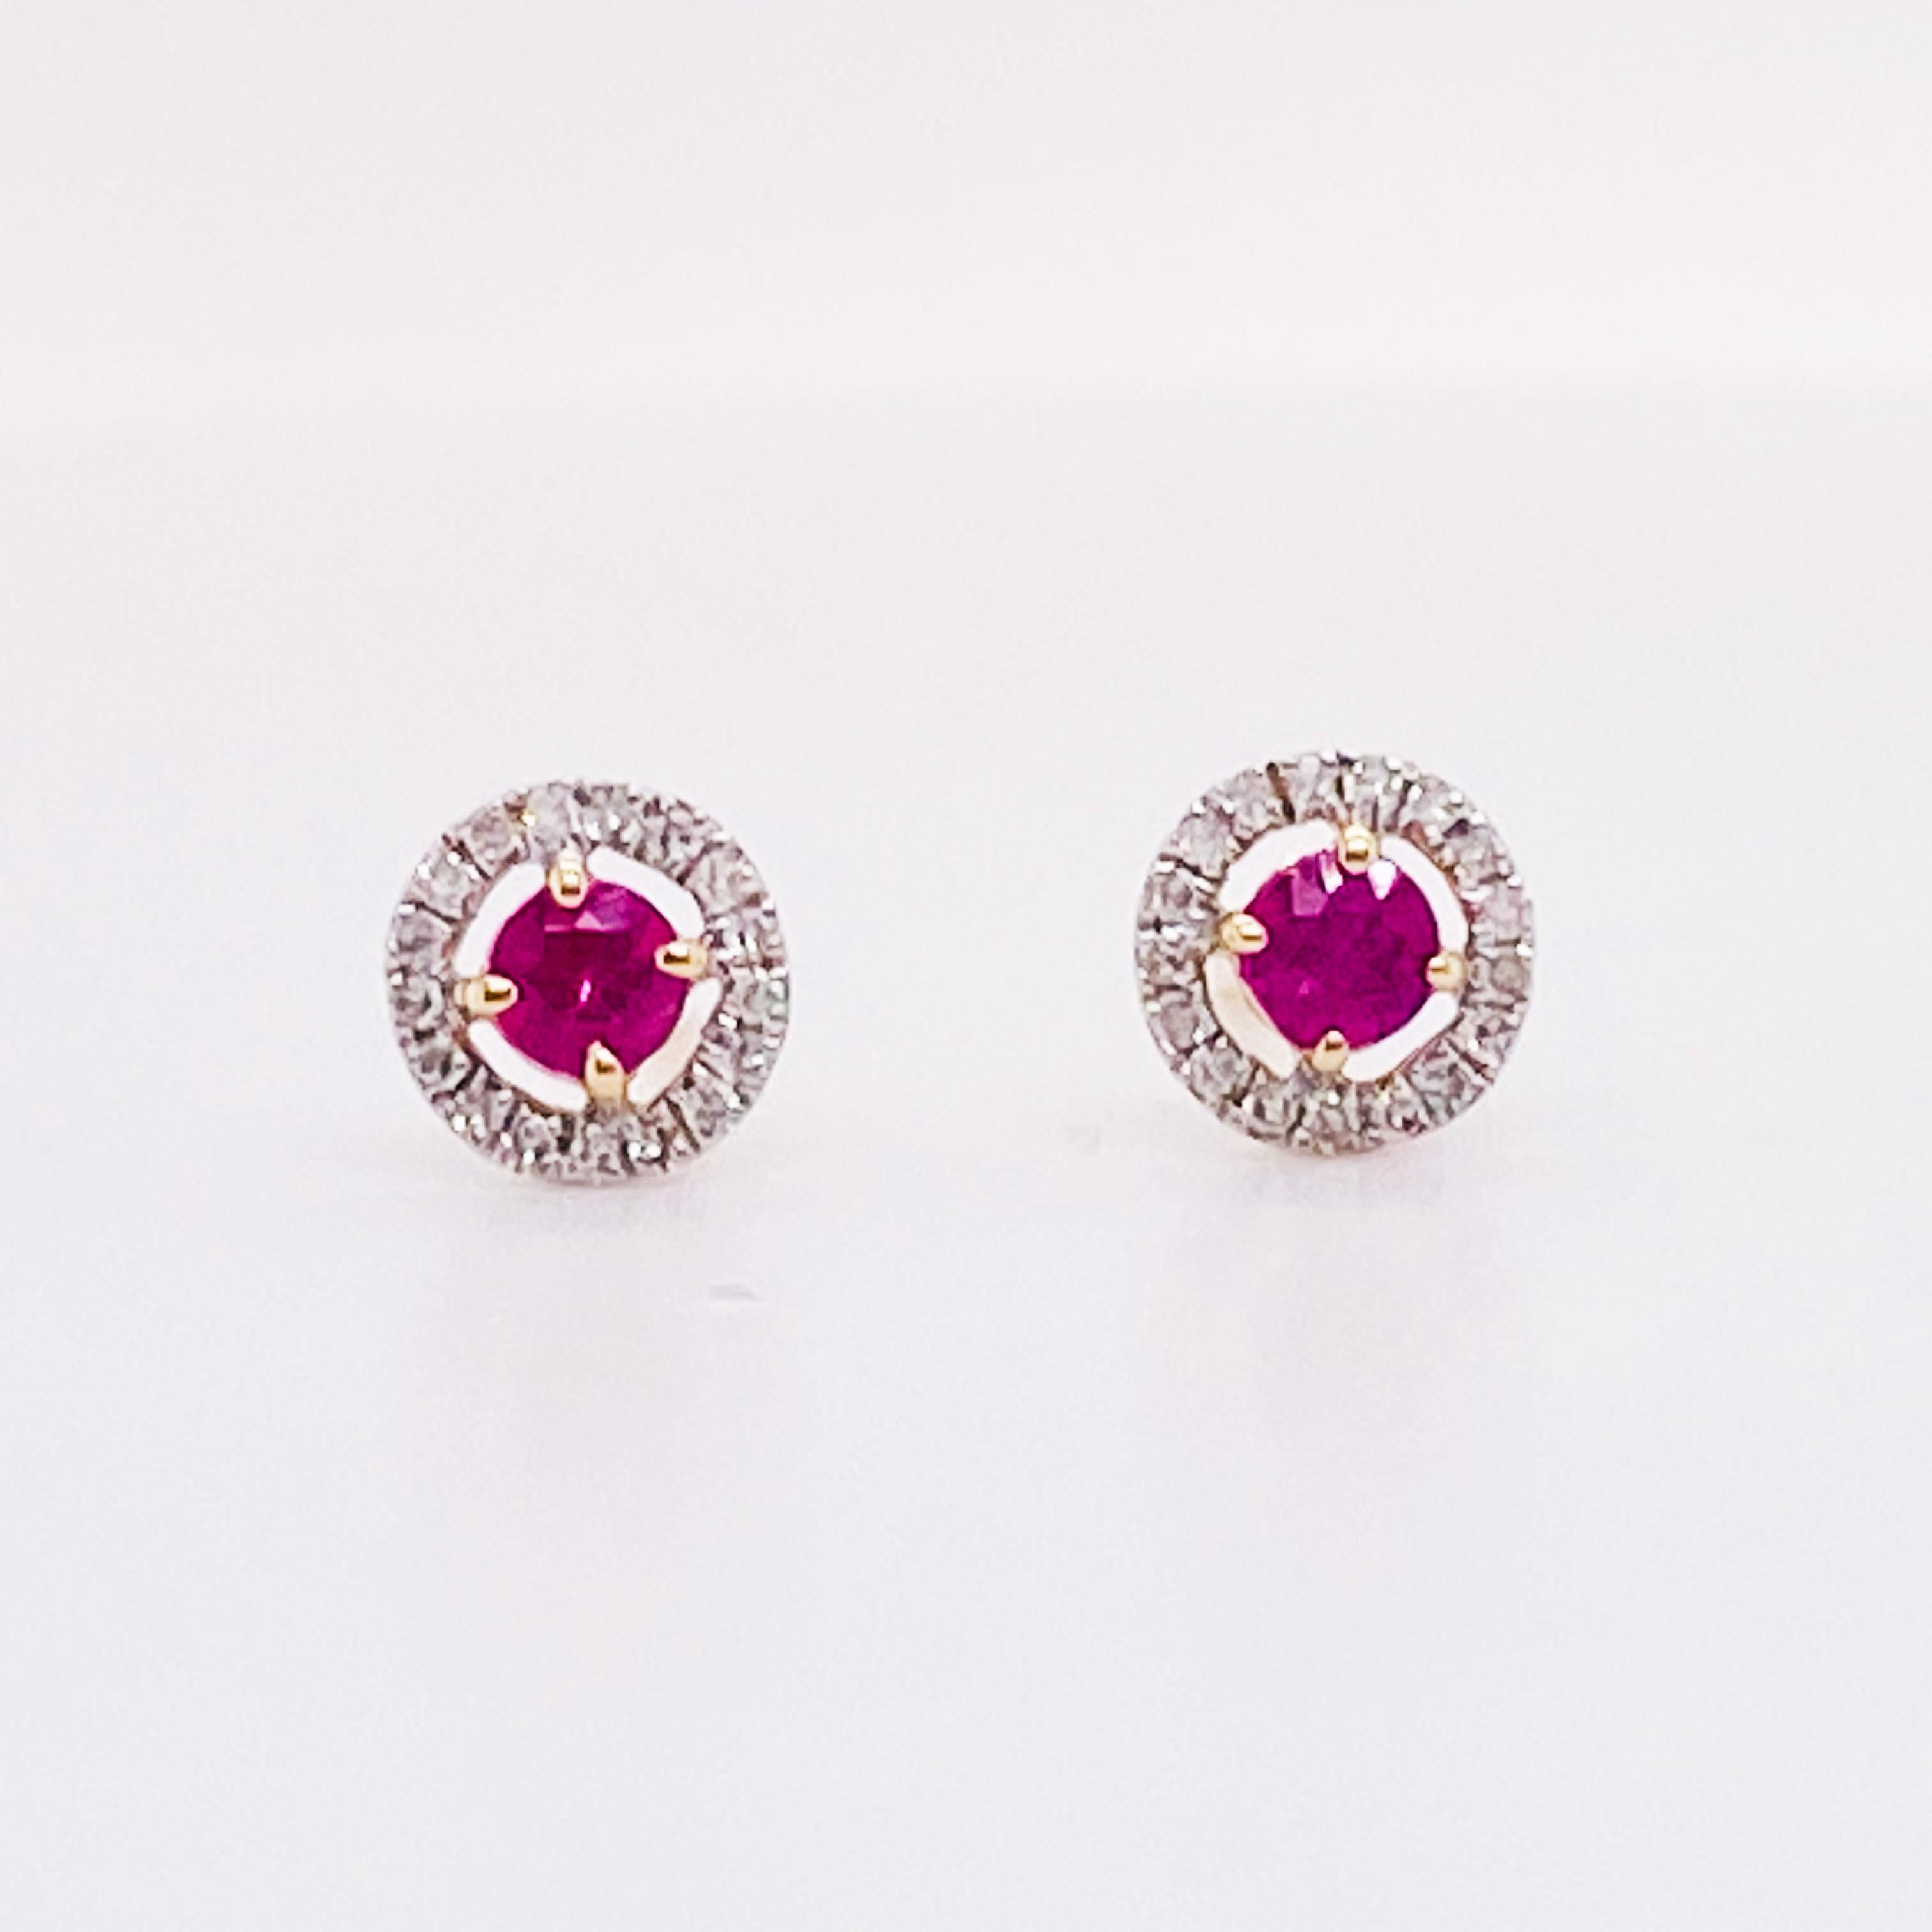 Diese minimalistischen Rubin- und Diamant-Ohrringe leuchten hell in Ihrem Ohrläppchen. Die Rubine haben eine leuchtend rote Farbe und sind von herrlichen weißen Diamanten umgeben. Die Ohrringe haben einen Durchmesser von 6 Millimetern und alle